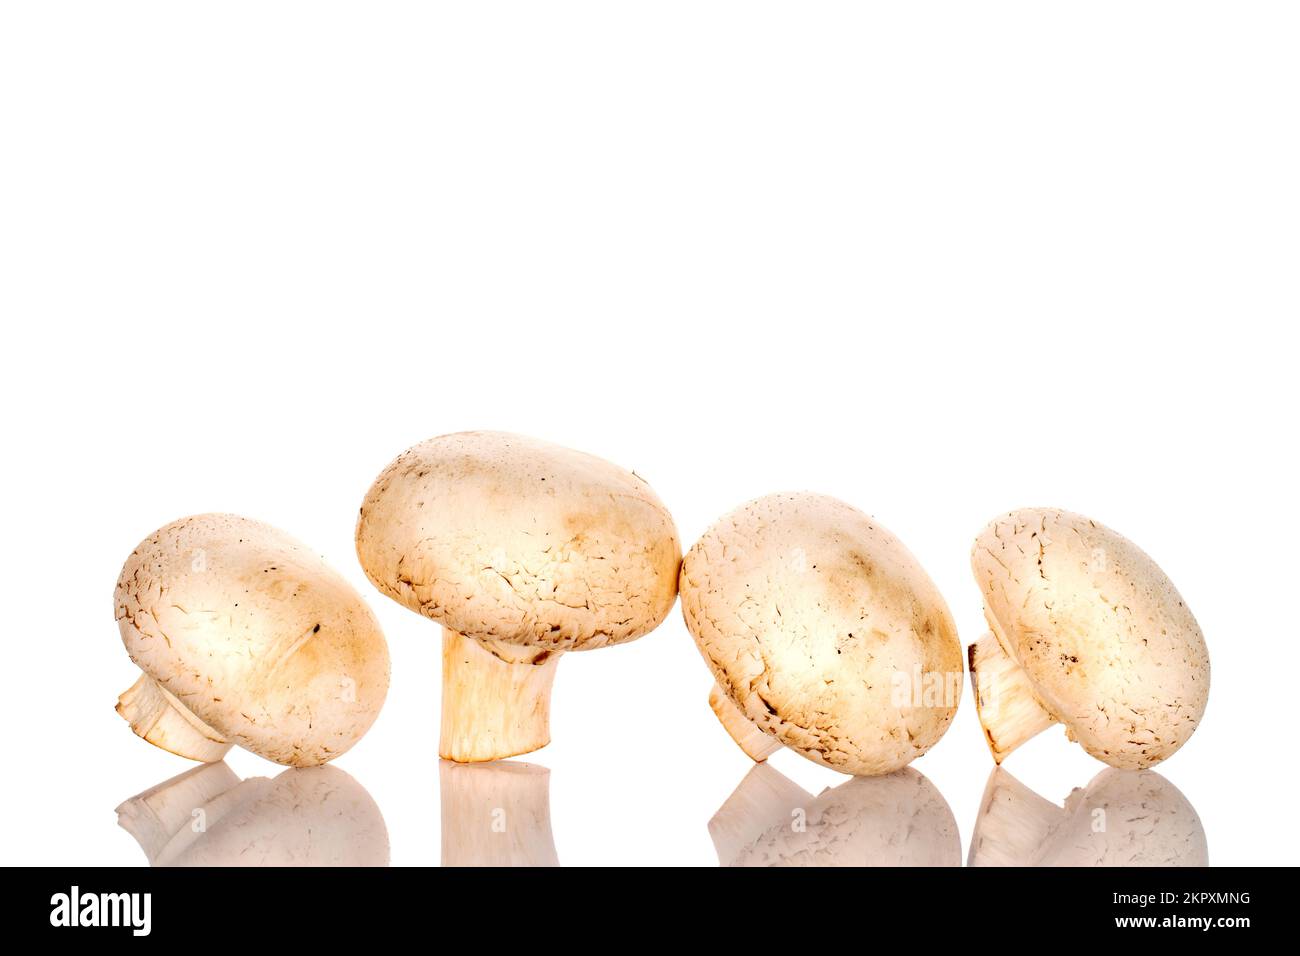 Diversi funghi champignon biologici freschi appetitosi su sfondo bianco. Foto Stock